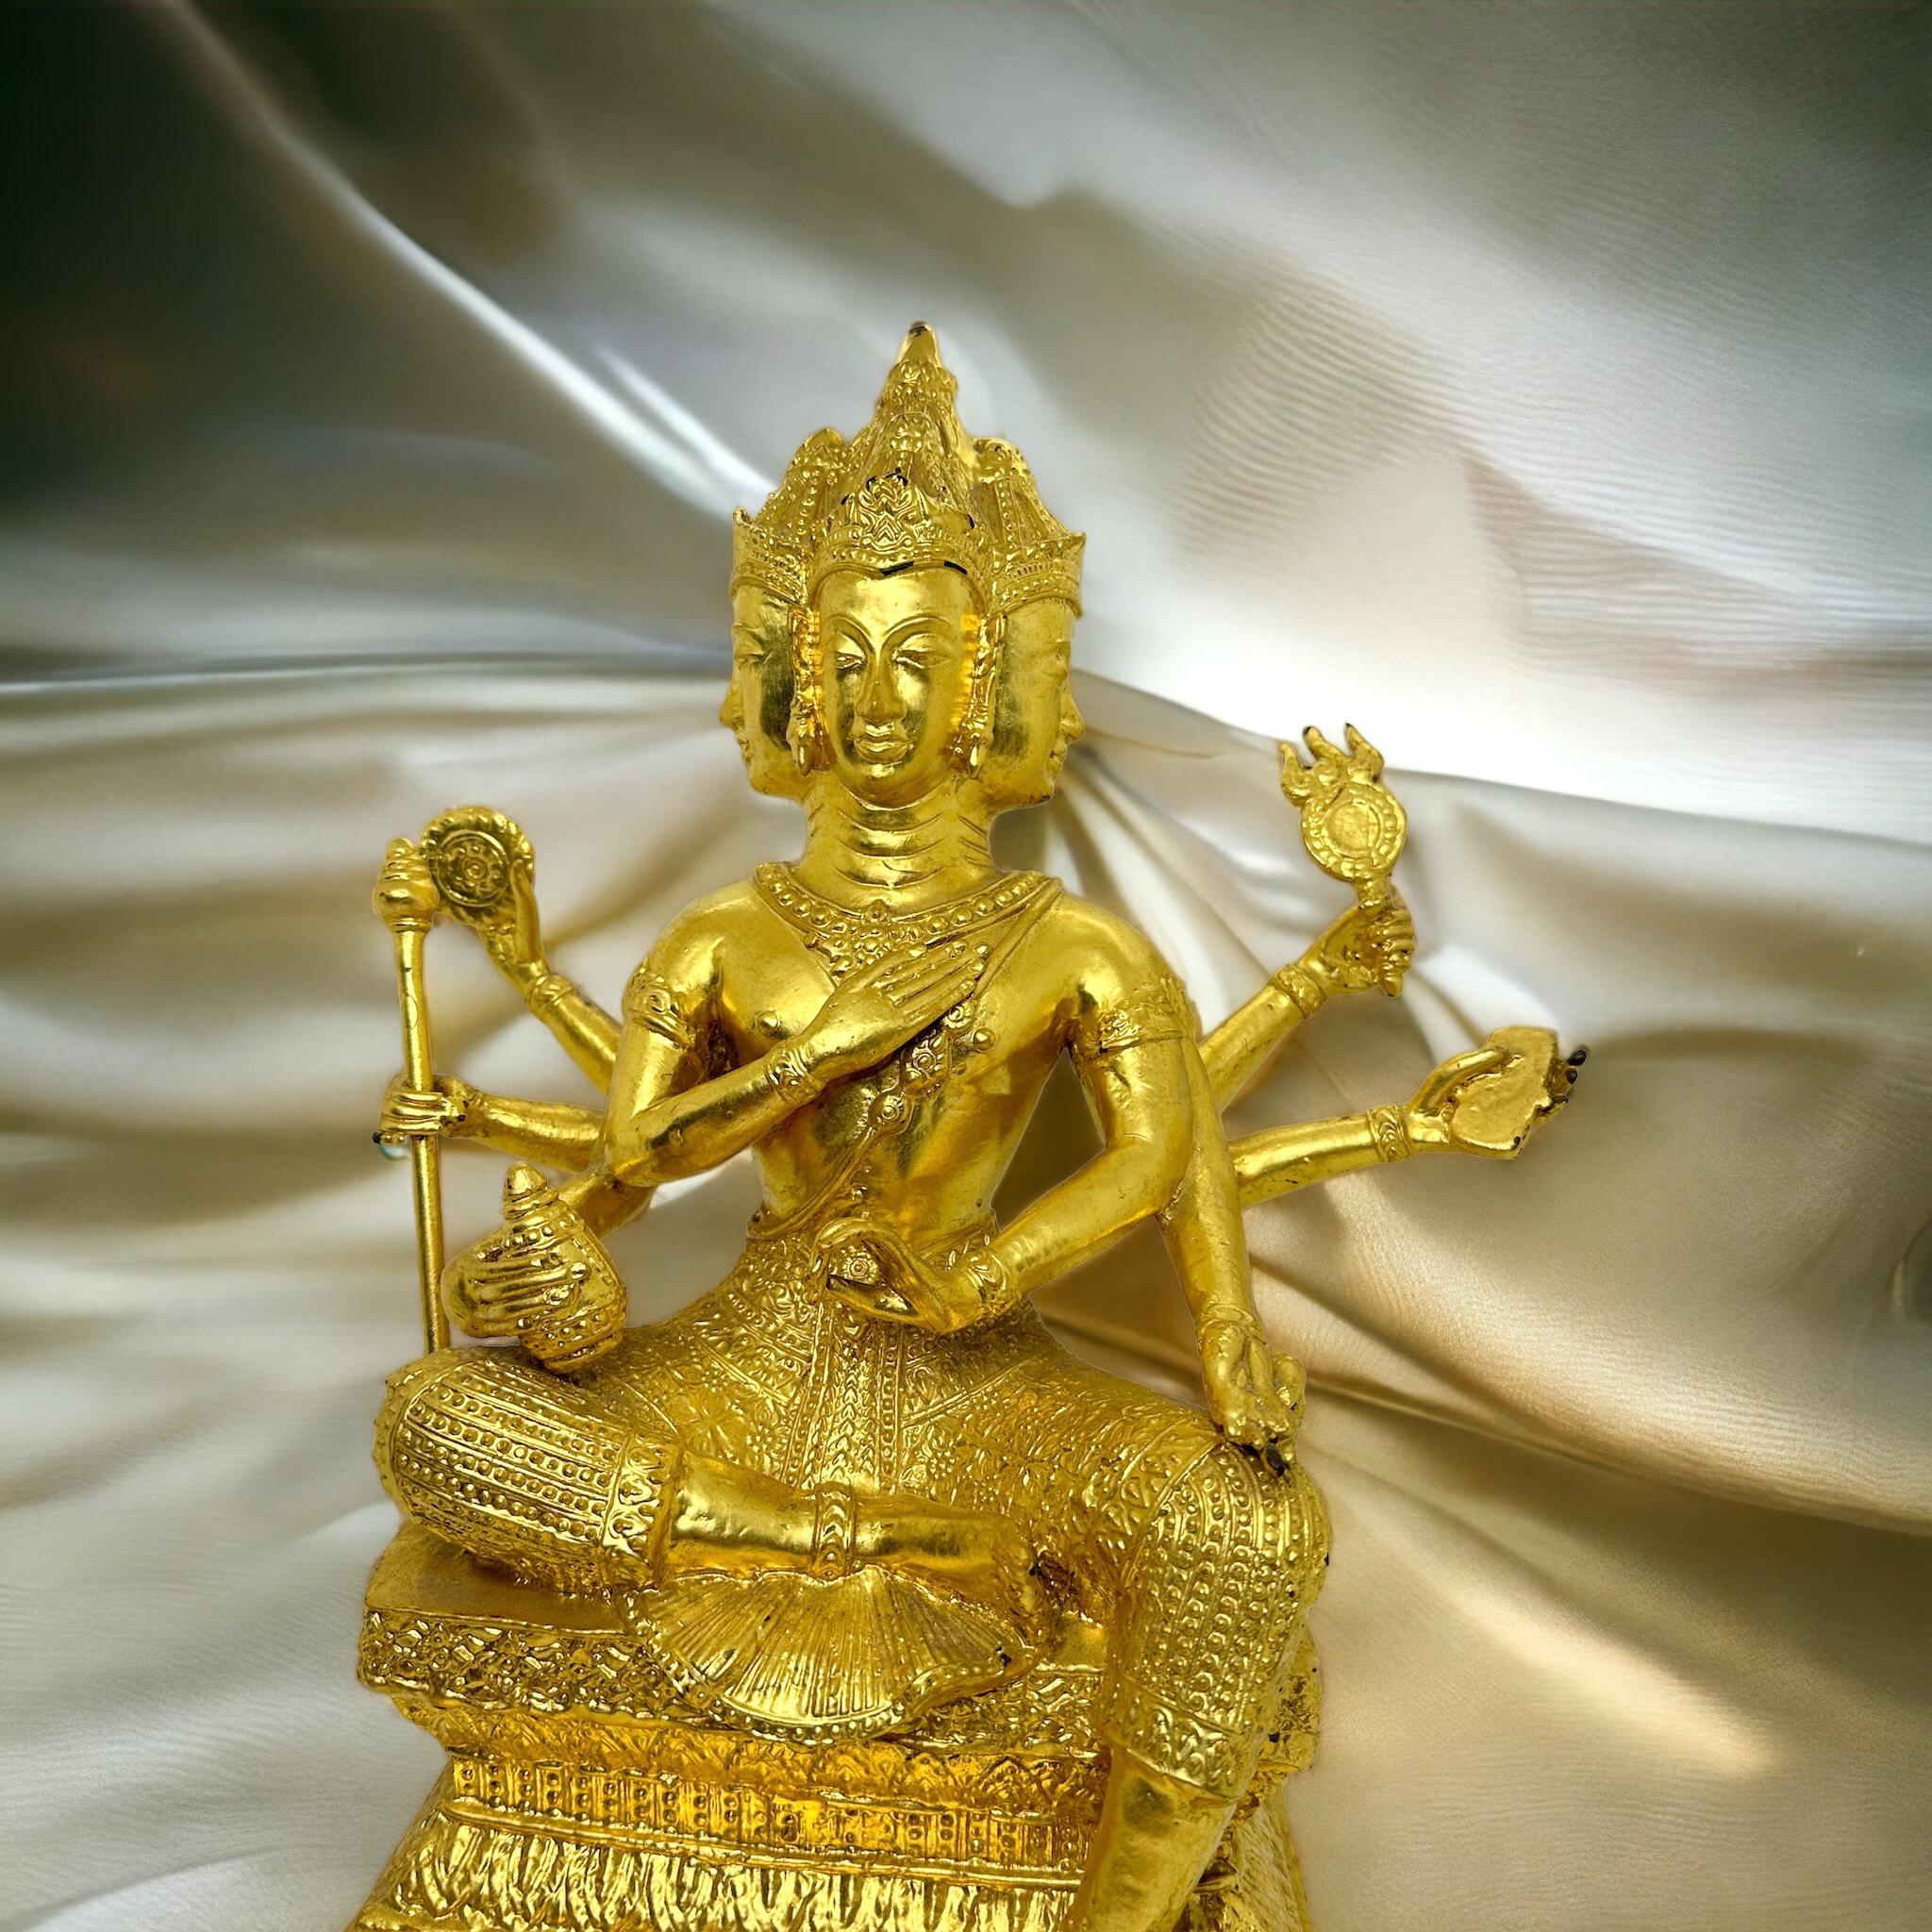 Eine dekorative, handgefertigte Skulptur oder Statue. Er zeigt Brahma, den ersten der drei hinduistischen Dreifaltigkeit, der der Schöpfer des Universums ist. Er wird mit vier Gesichtern abgebildet, die in die vier Himmelsrichtungen blicken. Brahma